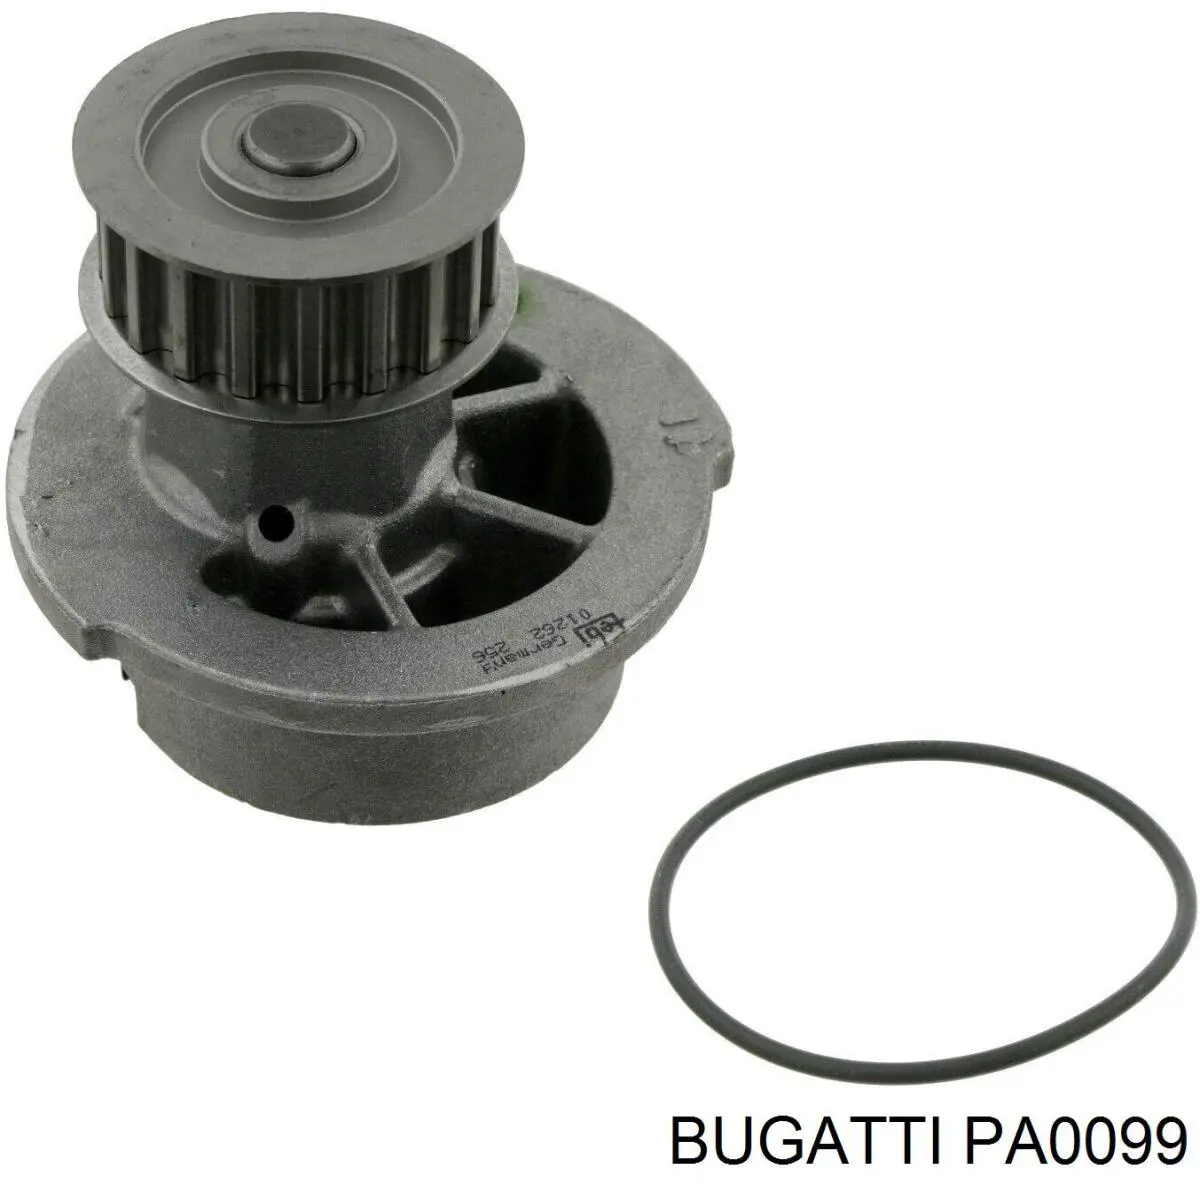 PA0099 Bugatti bomba de agua